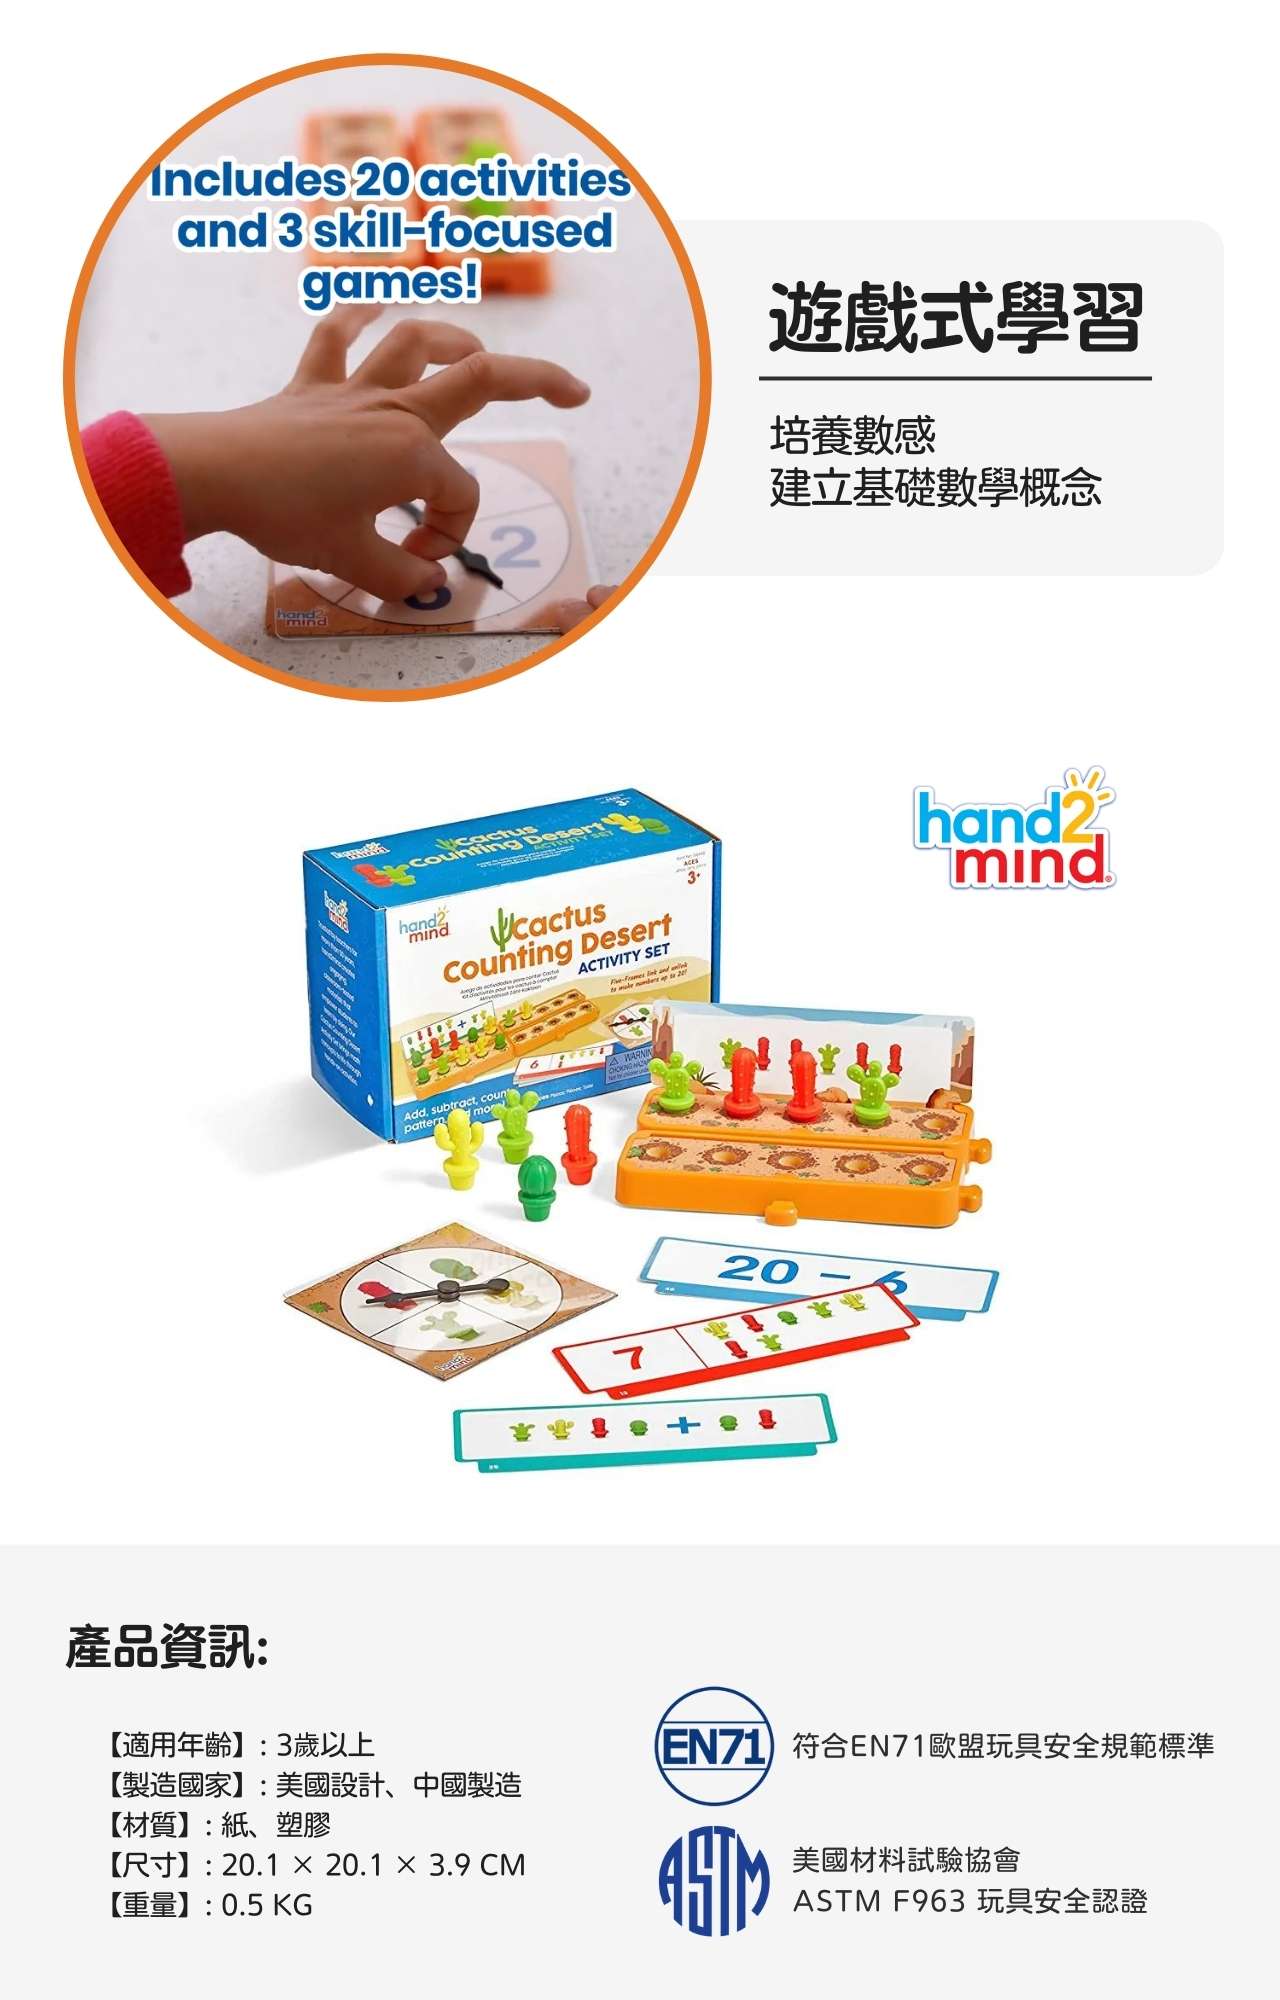 hand2mind 益智數學教具-仙人掌算術遊戲組_產品介紹 (6)